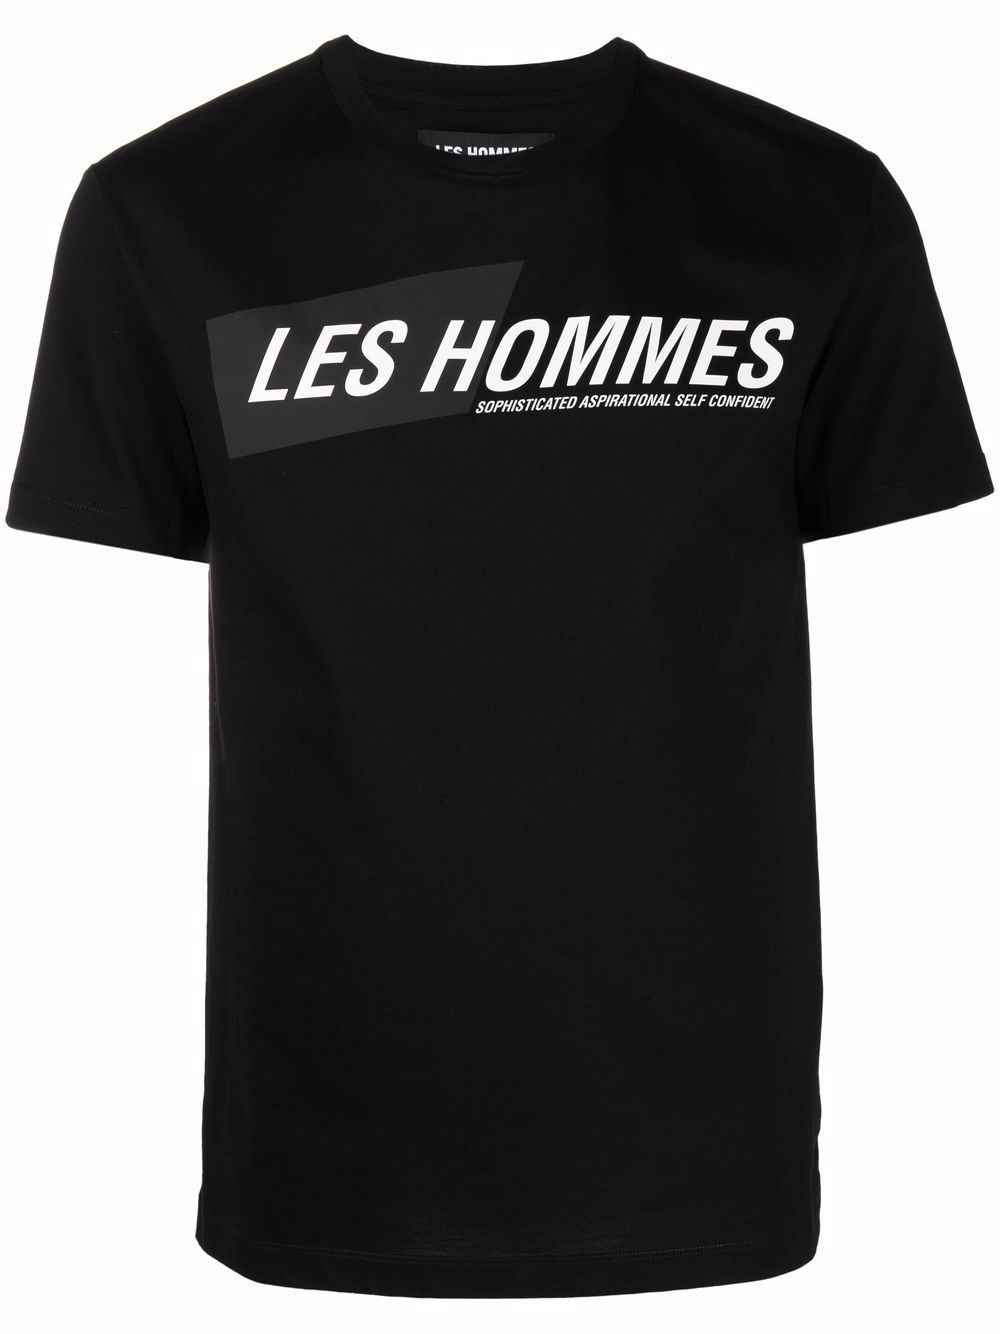 фото Les hommes футболка с логотипом